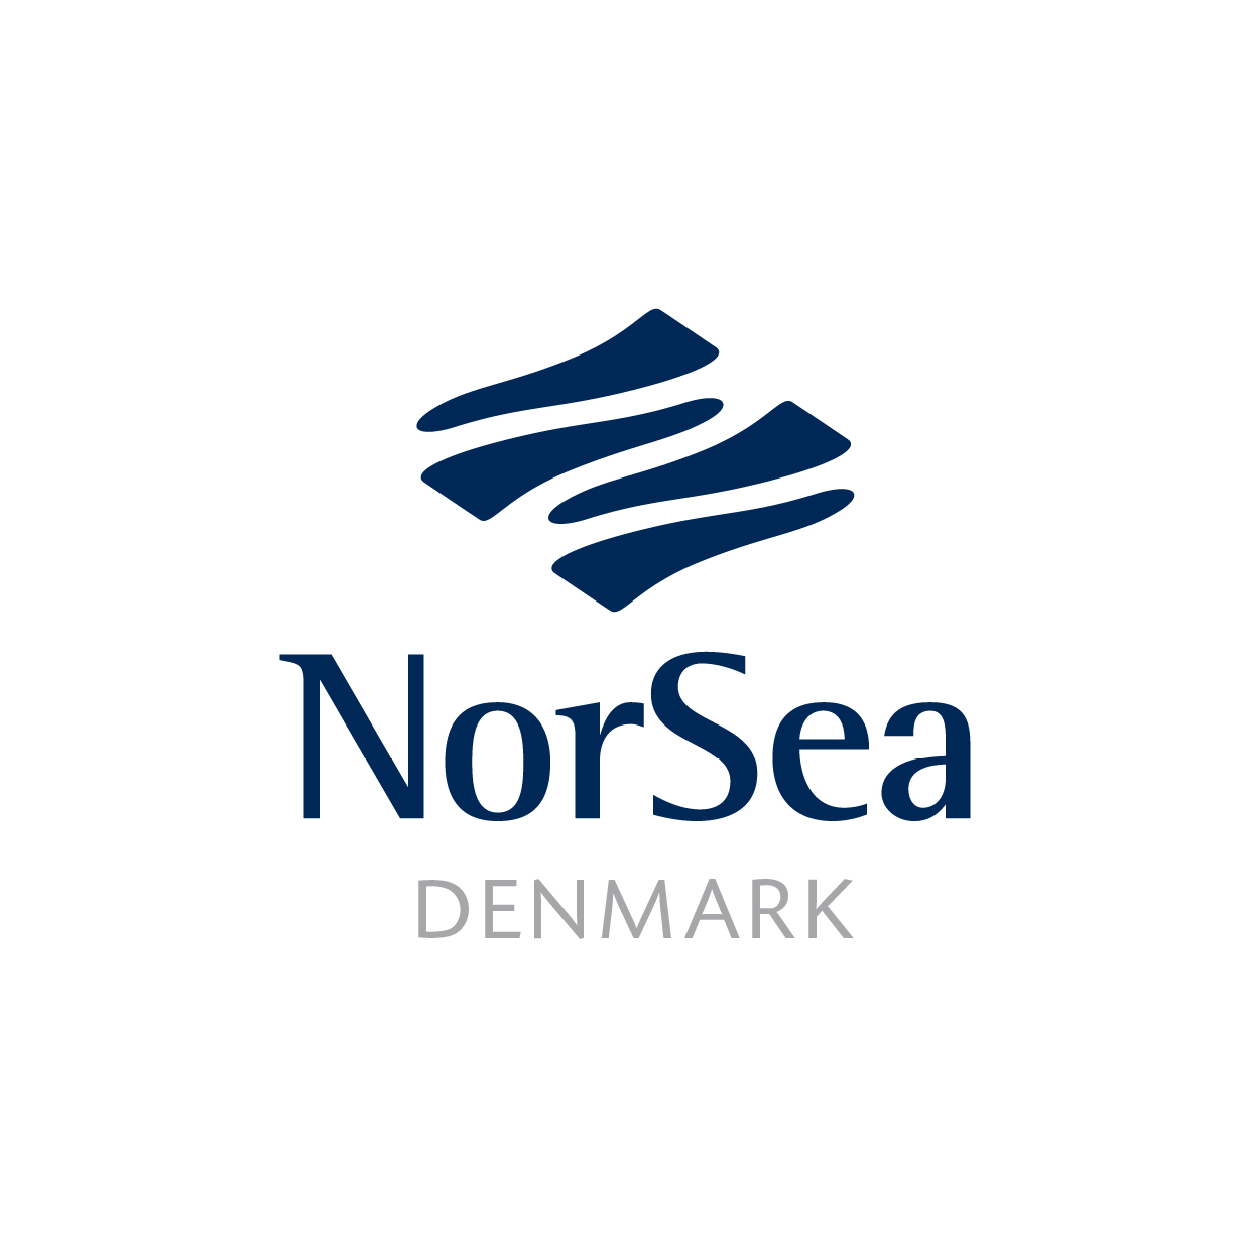 The logo for NorSea Denmark, an ACP member.